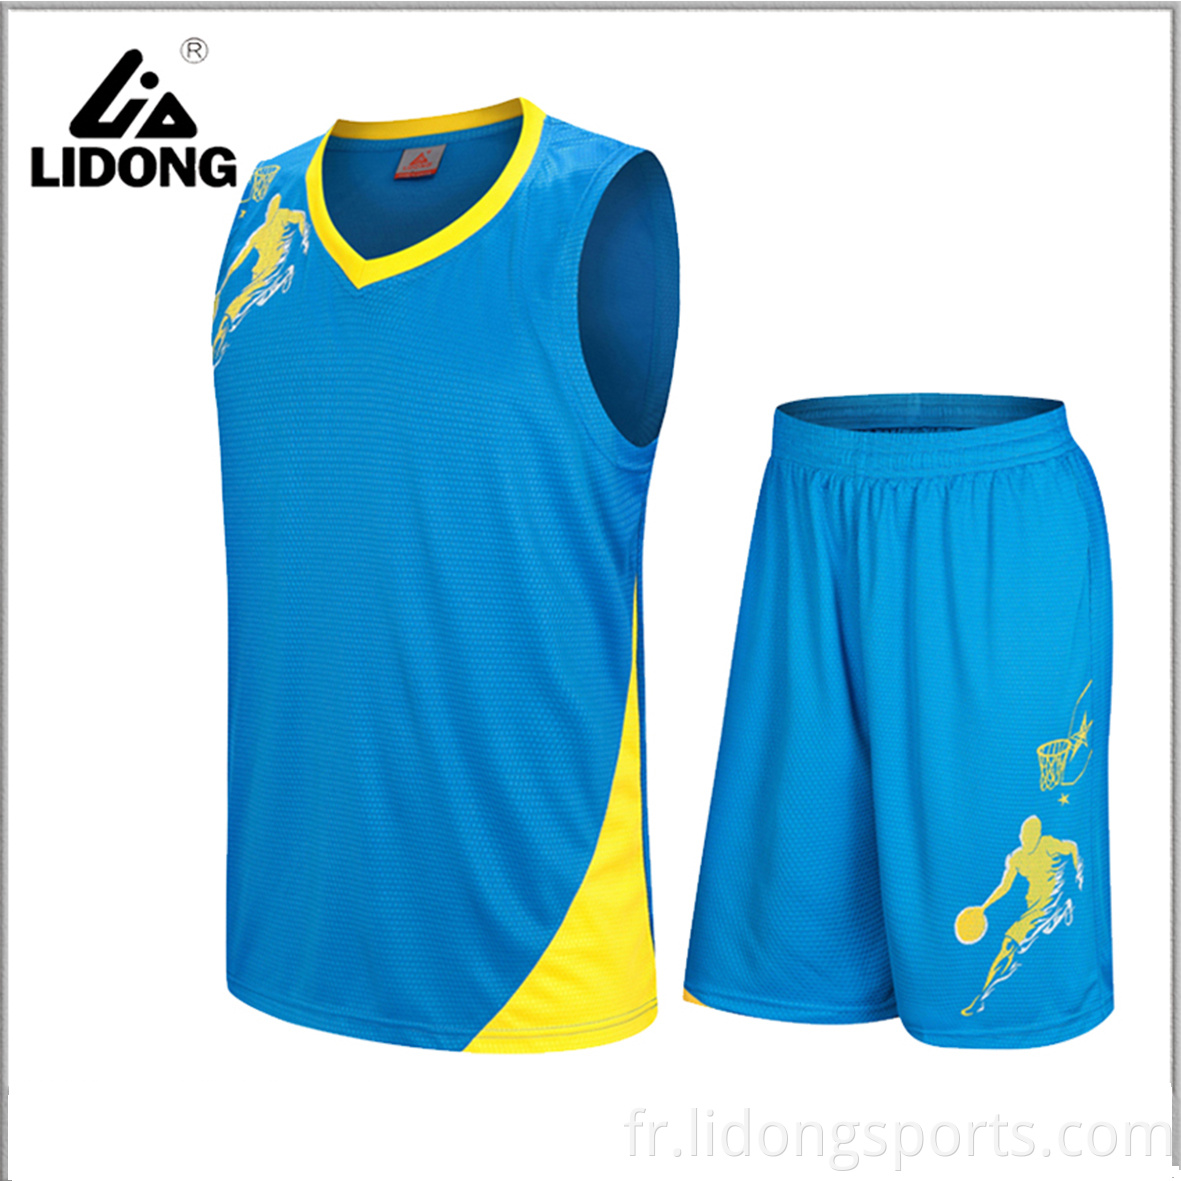 Nouveaux uniformes de basket-ball unisex fabriqué sur mesure et adulte